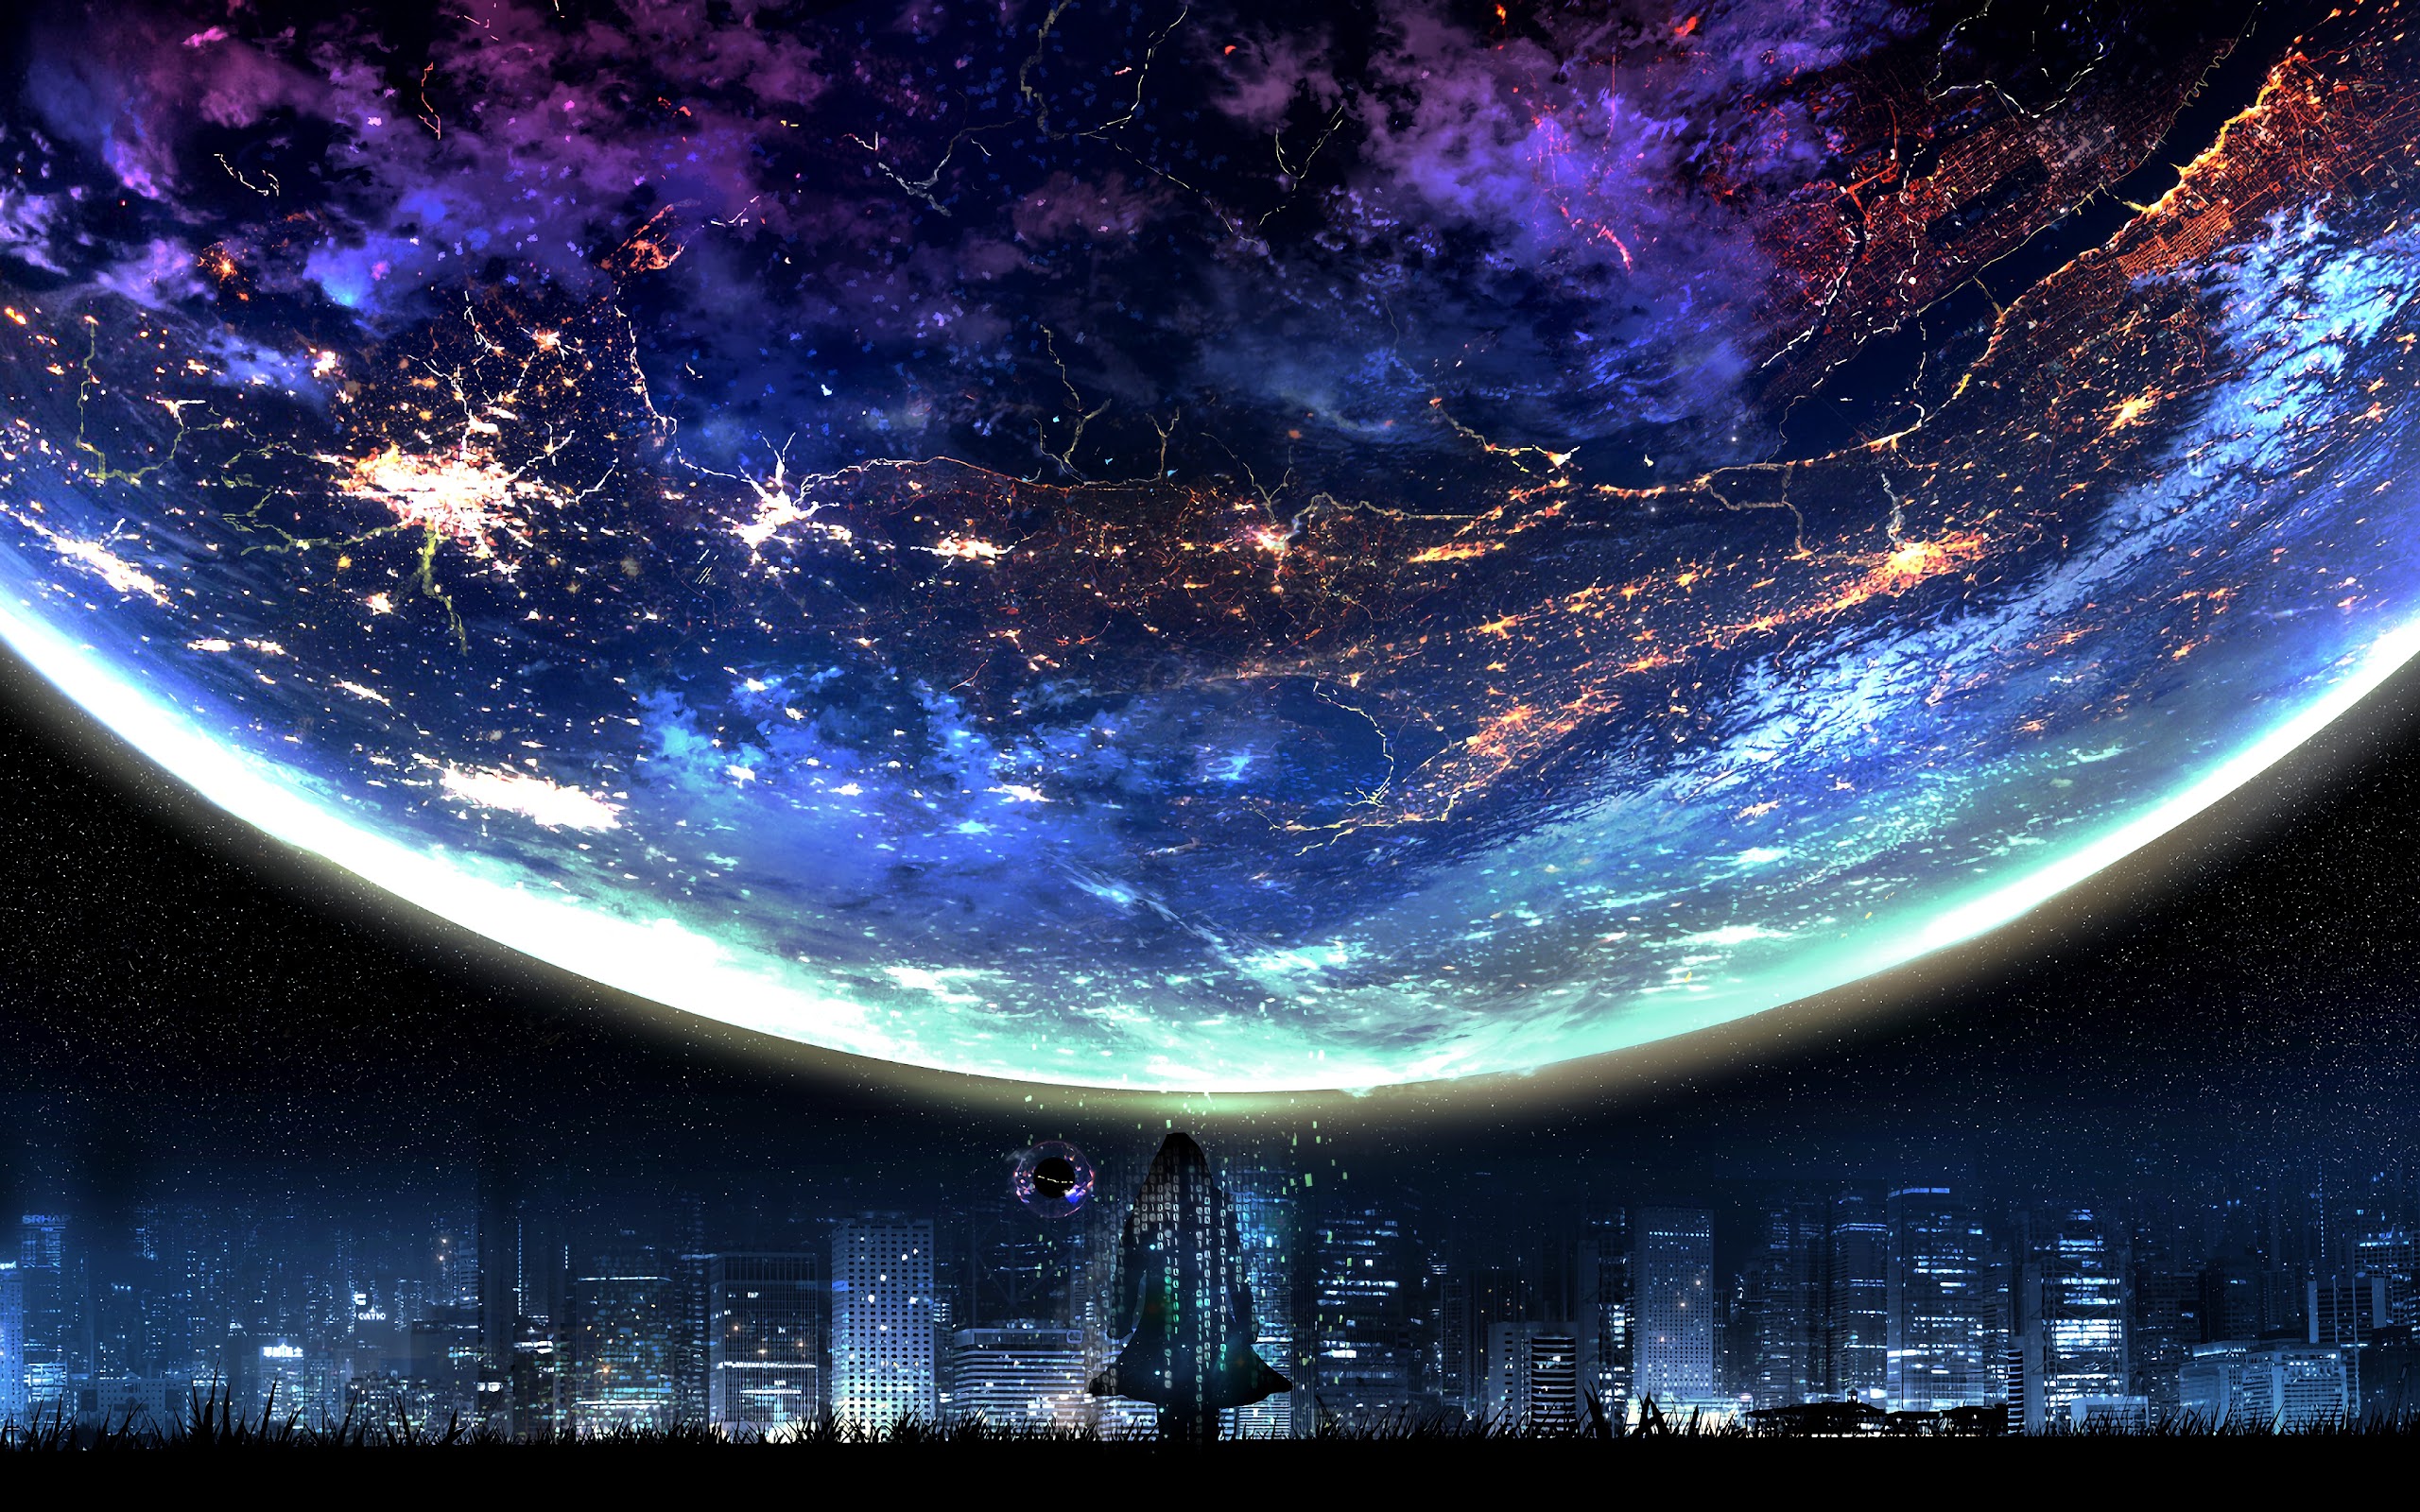 Có ai đó từng nói rằng vũ trụ là một chỗ đẹp đến kỳ lạ. Và hình nền anime Galaxy đẹp này chắc chắn sẽ cho bạn một cái nhìn mới về vũ trụ. Với một thiết kế tuyệt đẹp và sắc nét, việc trang trí màn hình máy tính của bạn sẽ không bao giờ trở nên nhàm chán nữa!